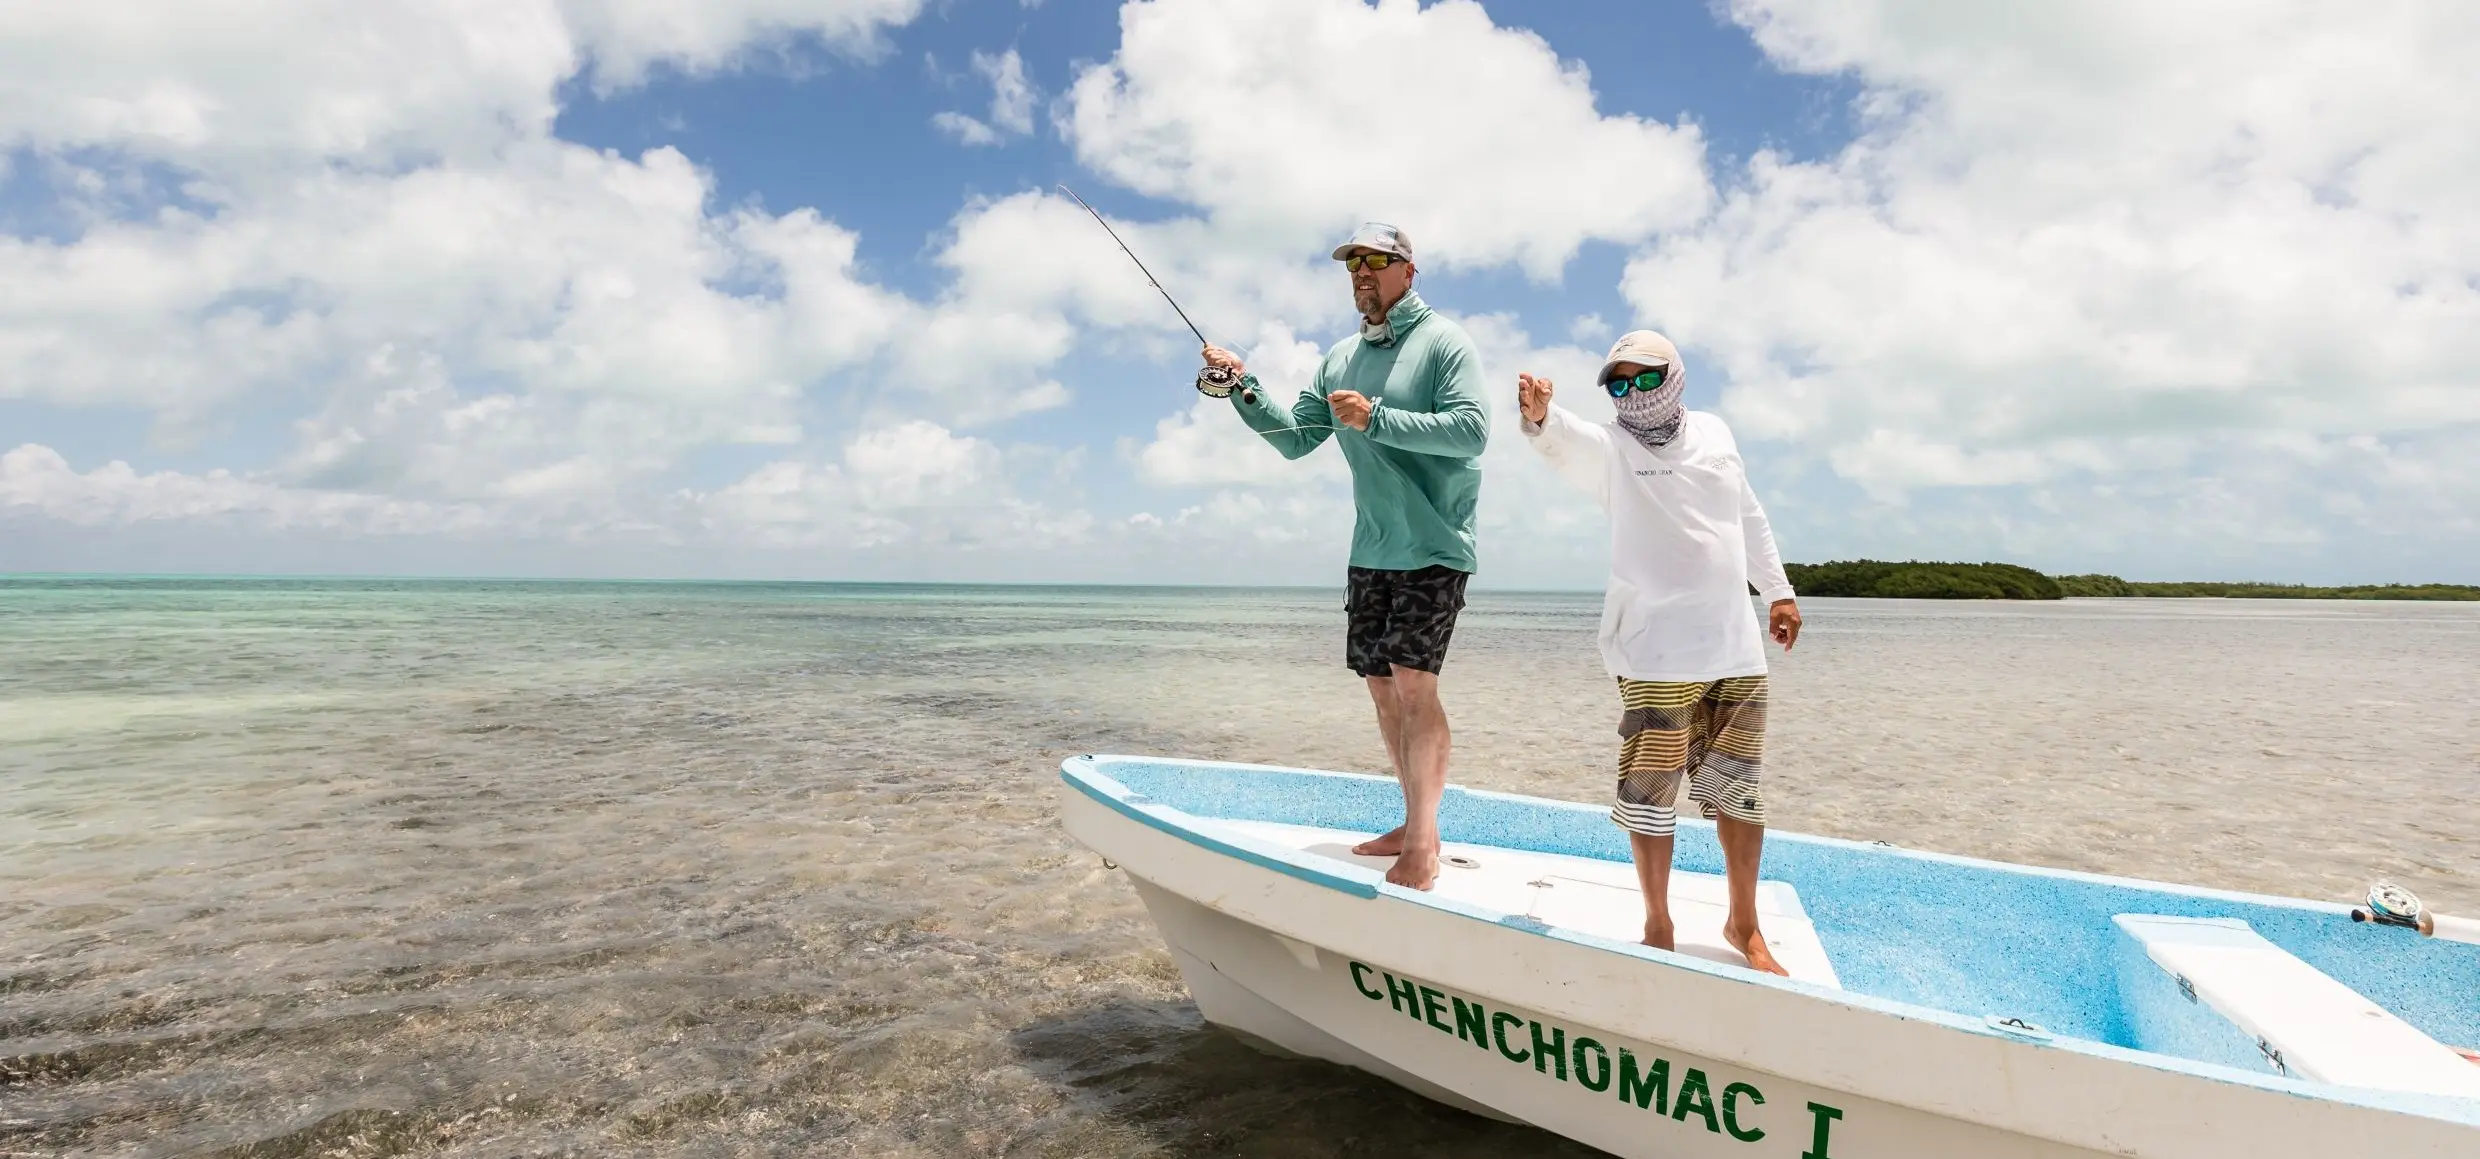 pesca con maya - Cómo funciona el chinchorro